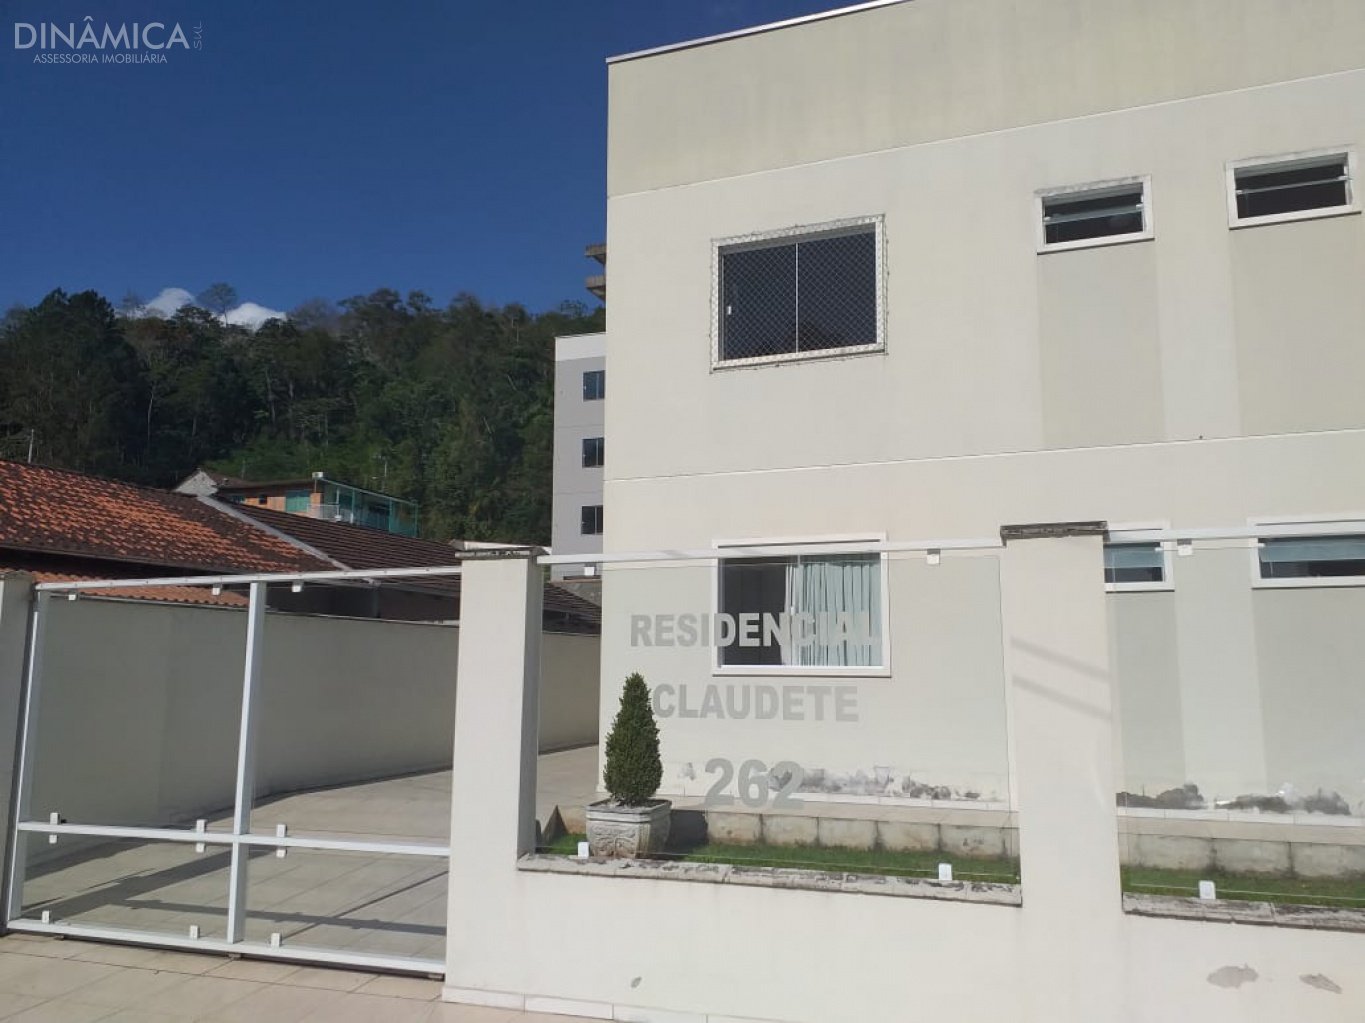 Apartamento de 3 dormitórios sendo 1 suíte, bairro Itoupavazinha, Blumenau-SC.